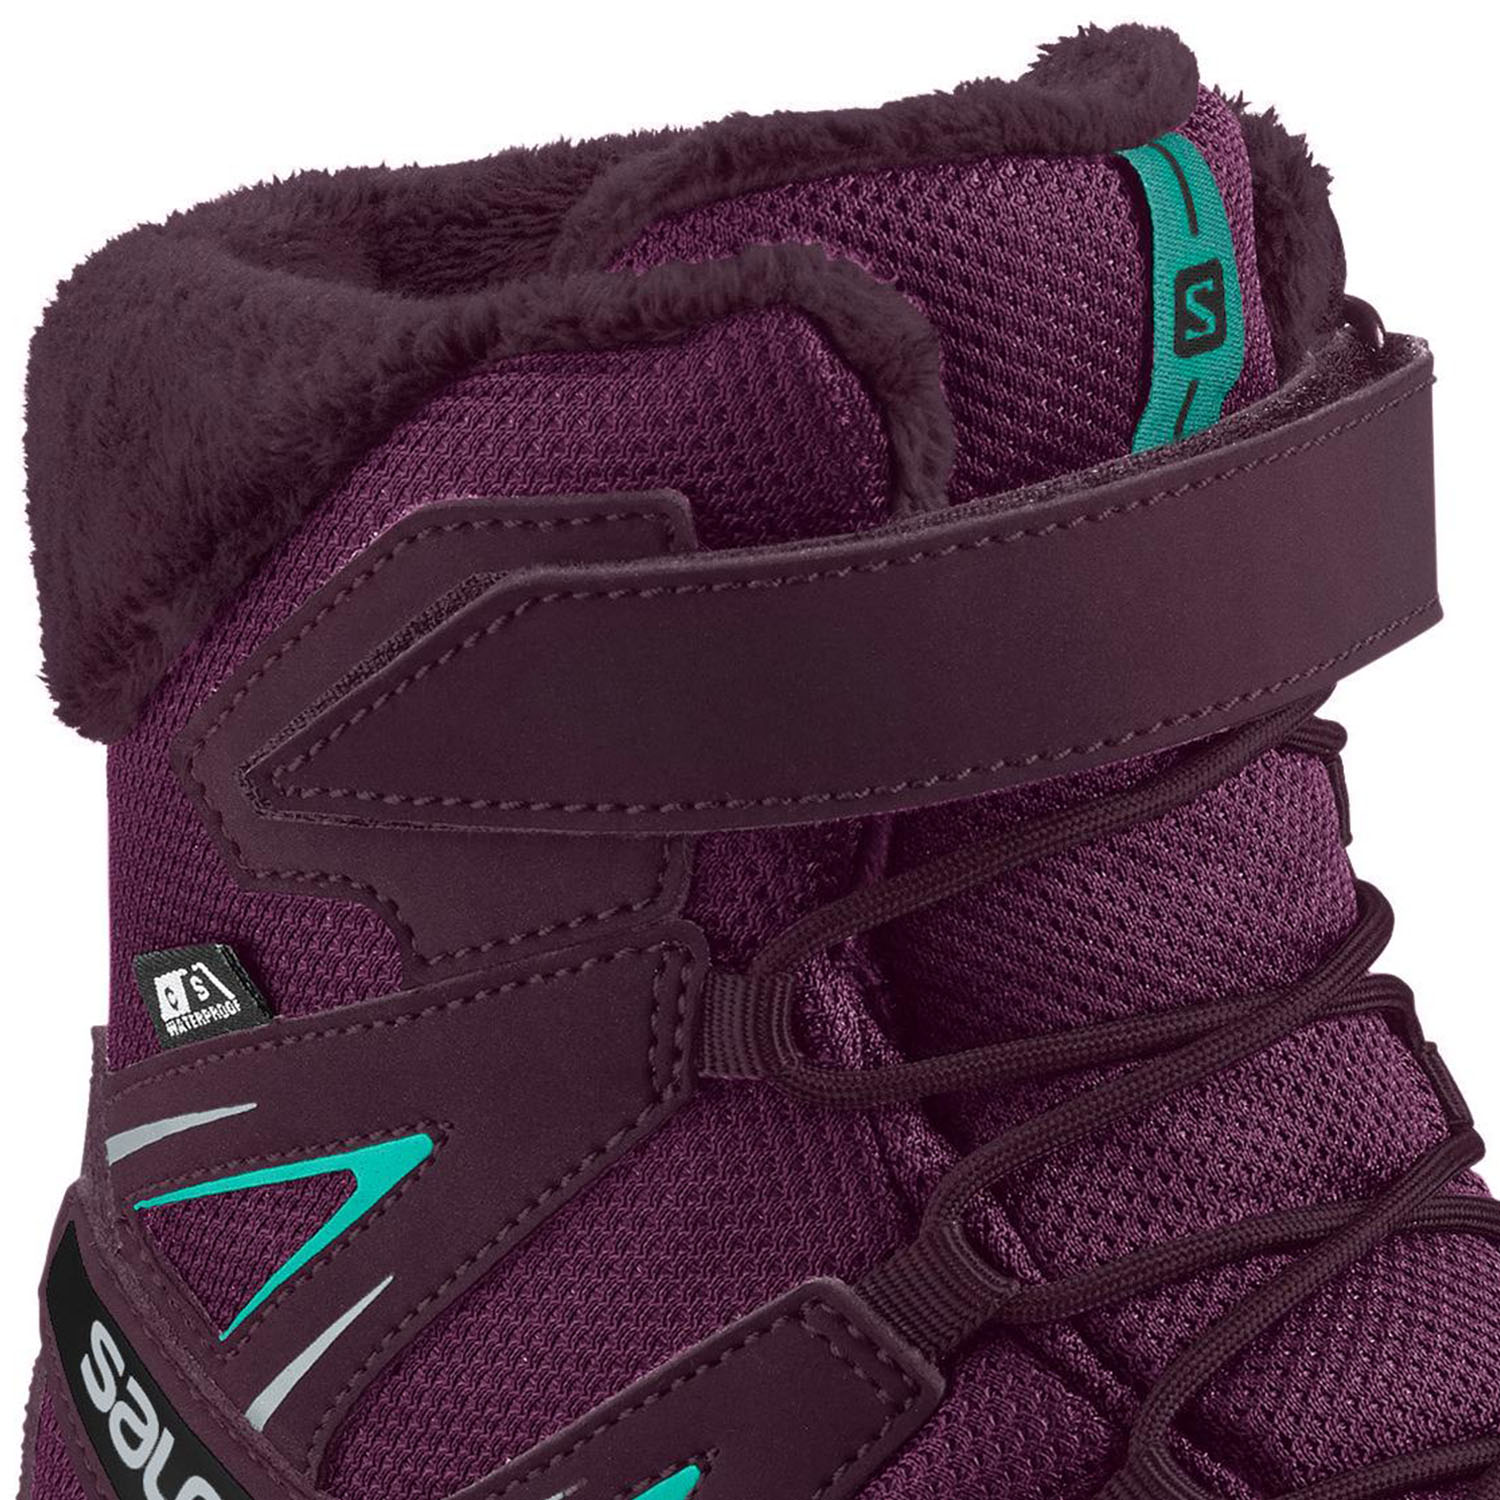 Треккинговые ботинки SALOMON Xa Pro 3D Winter Ts Cswp J Darkp